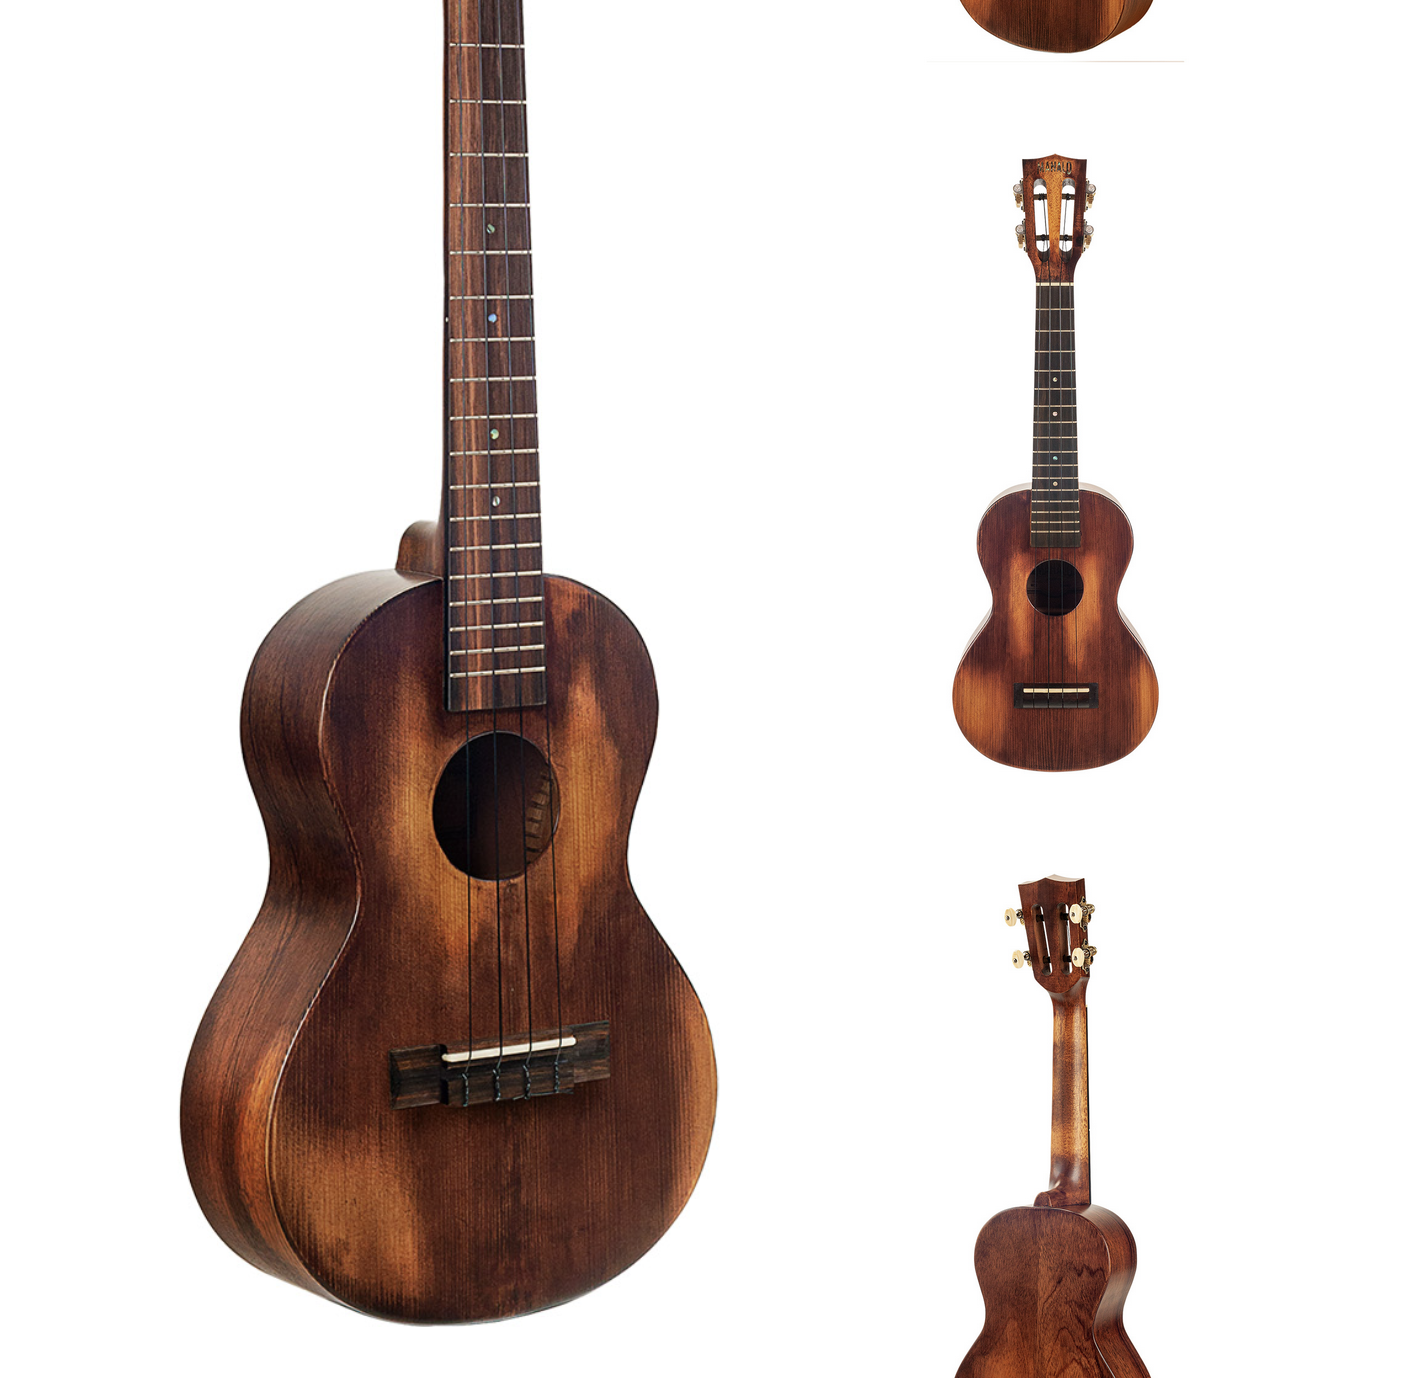 Historic tenor ukulele